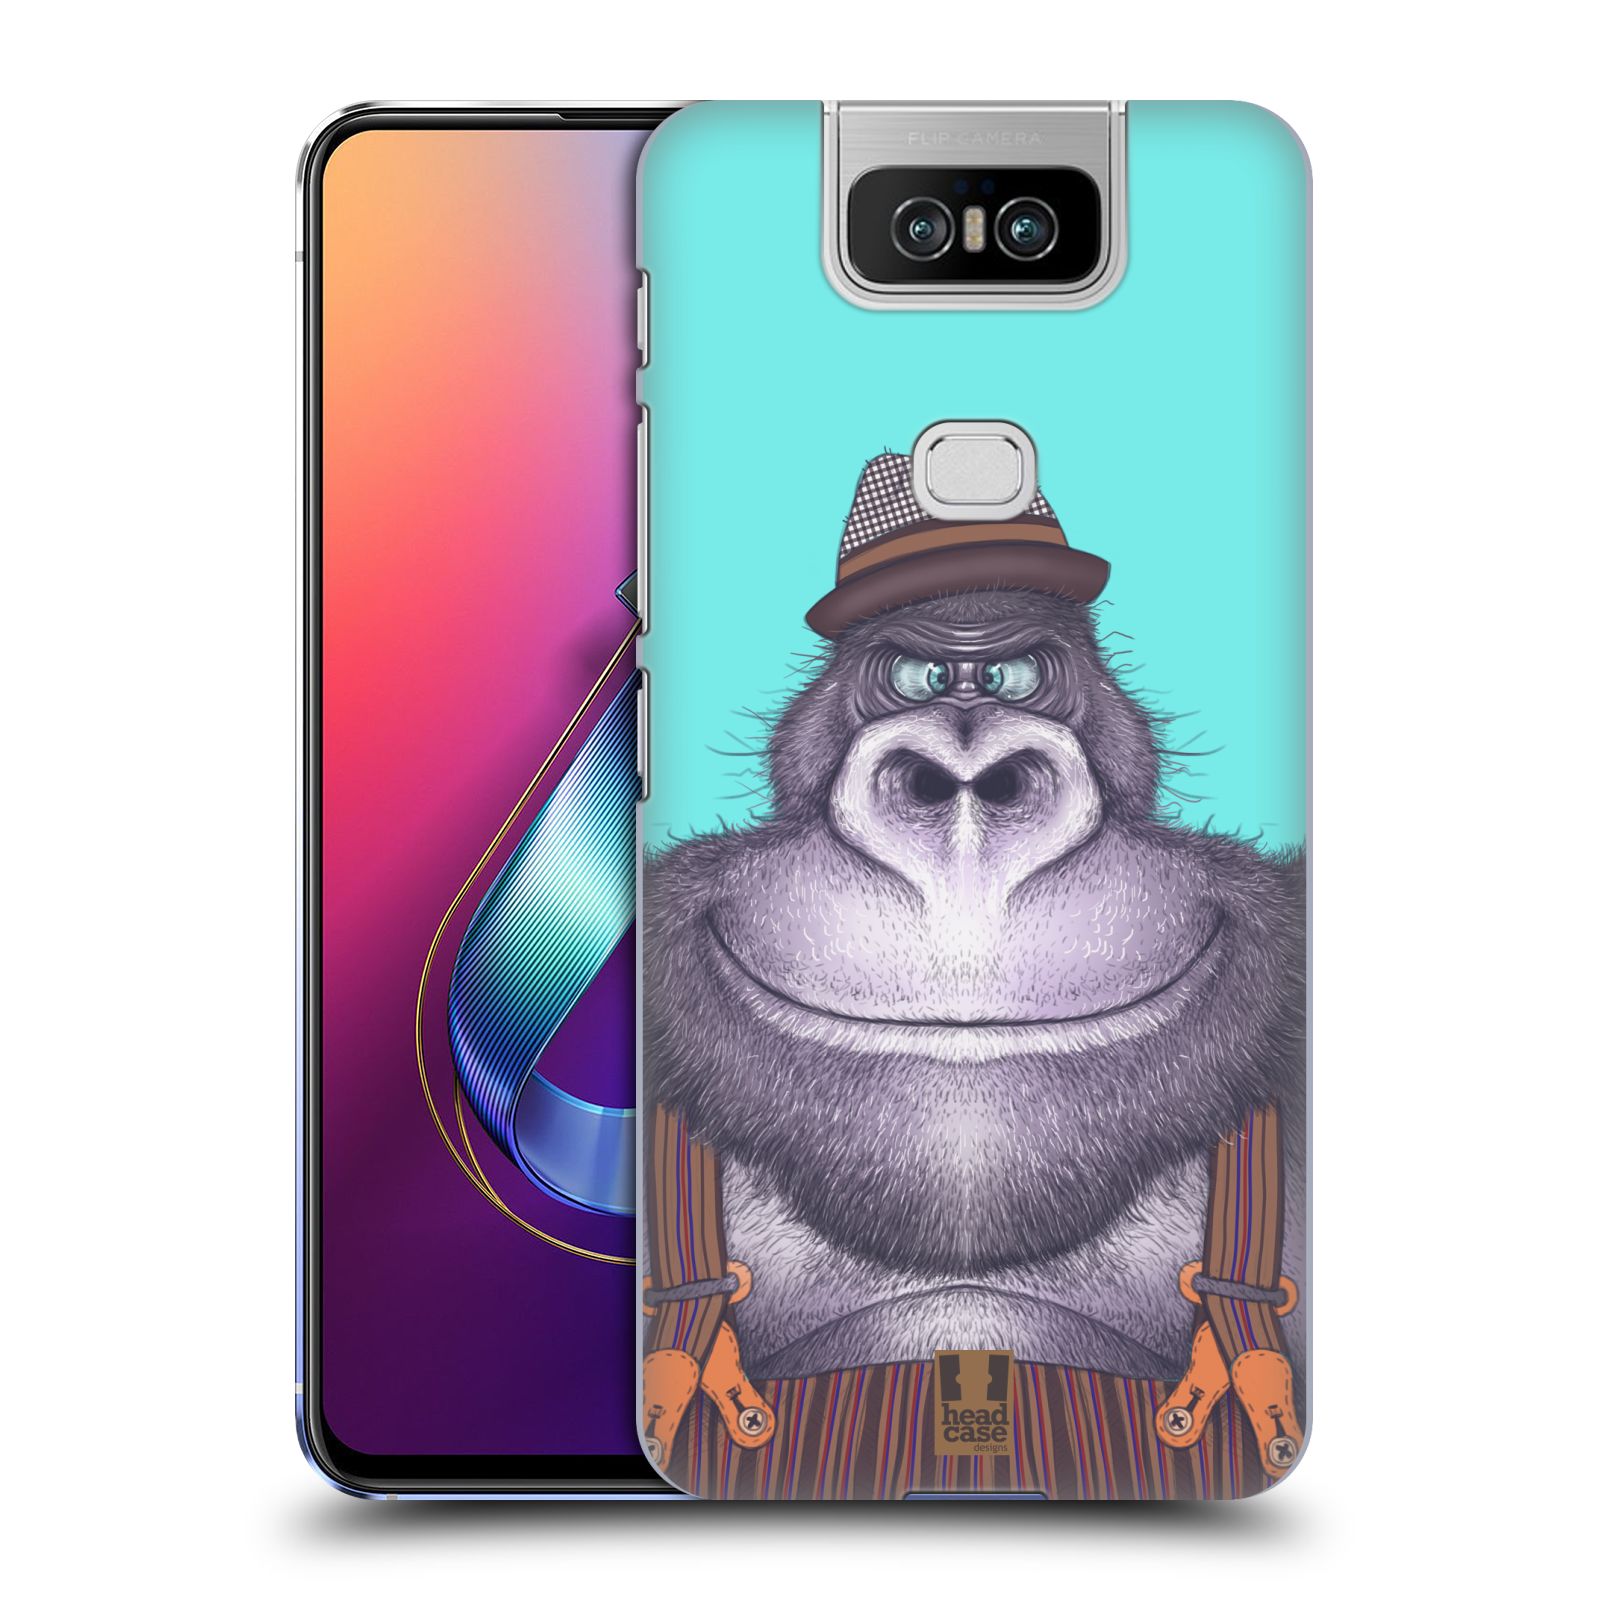 Pouzdro na mobil Asus Zenfone 6 ZS630KL - HEAD CASE - vzor Kreslená zvířátka gorila